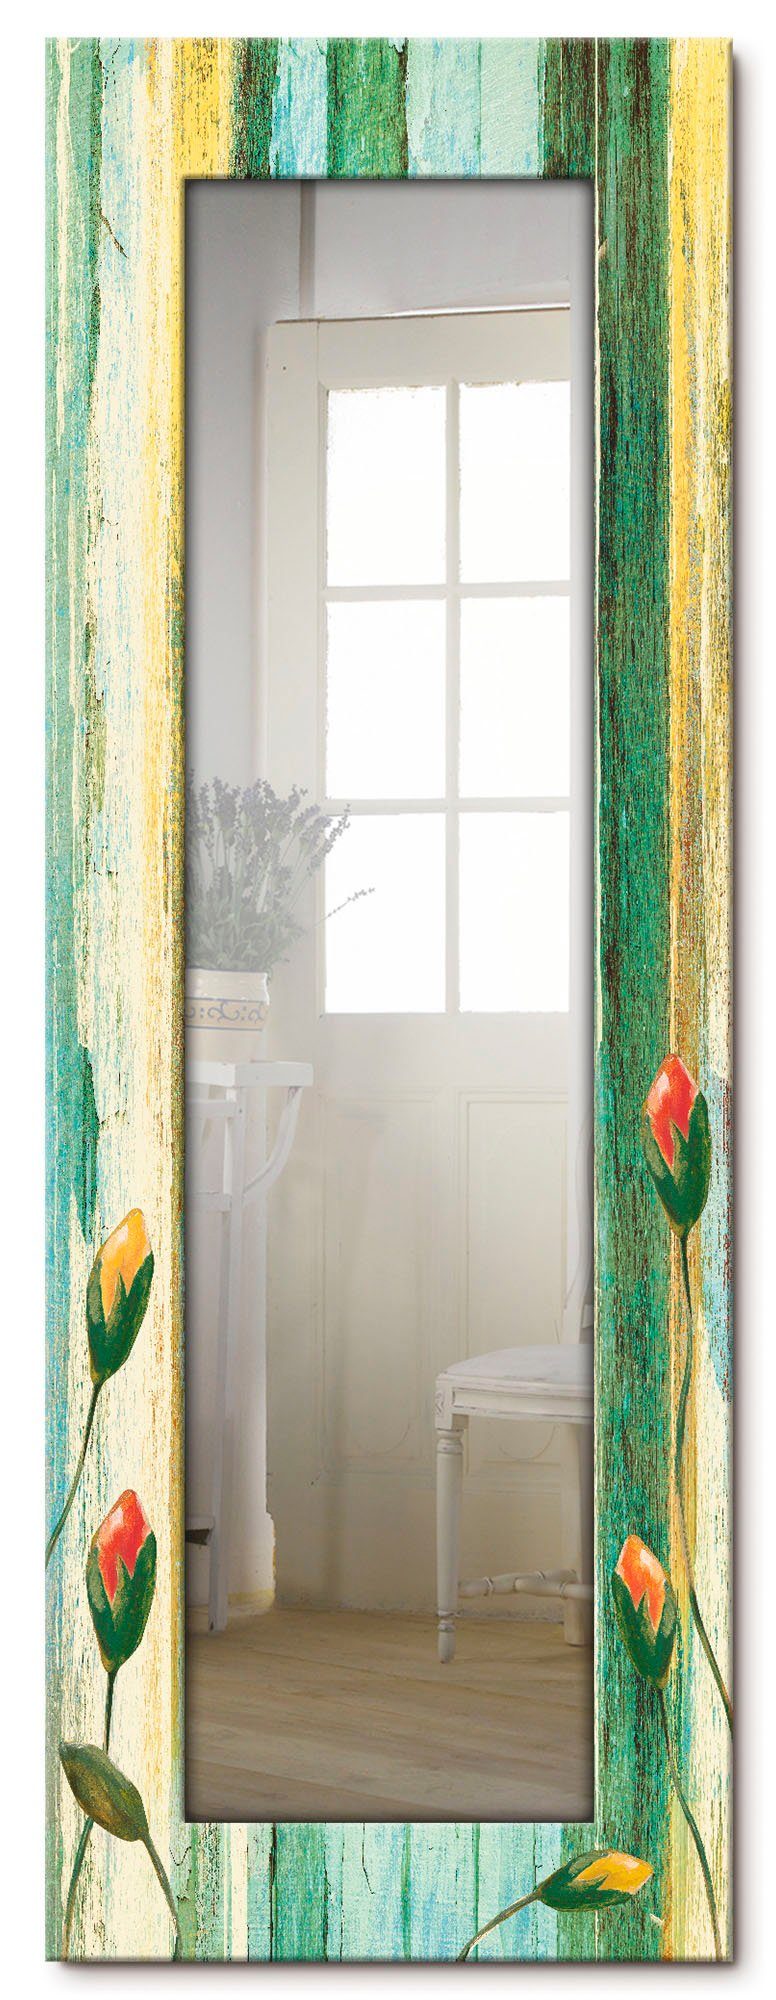 Artland Sierspiegel Veelkleurige bloemen ingelijste spiegel voor het hele lichaam met motiefrand, geschikt voor kleine, smalle hal, halspiegel, mirror spiegel omrand om op te hange